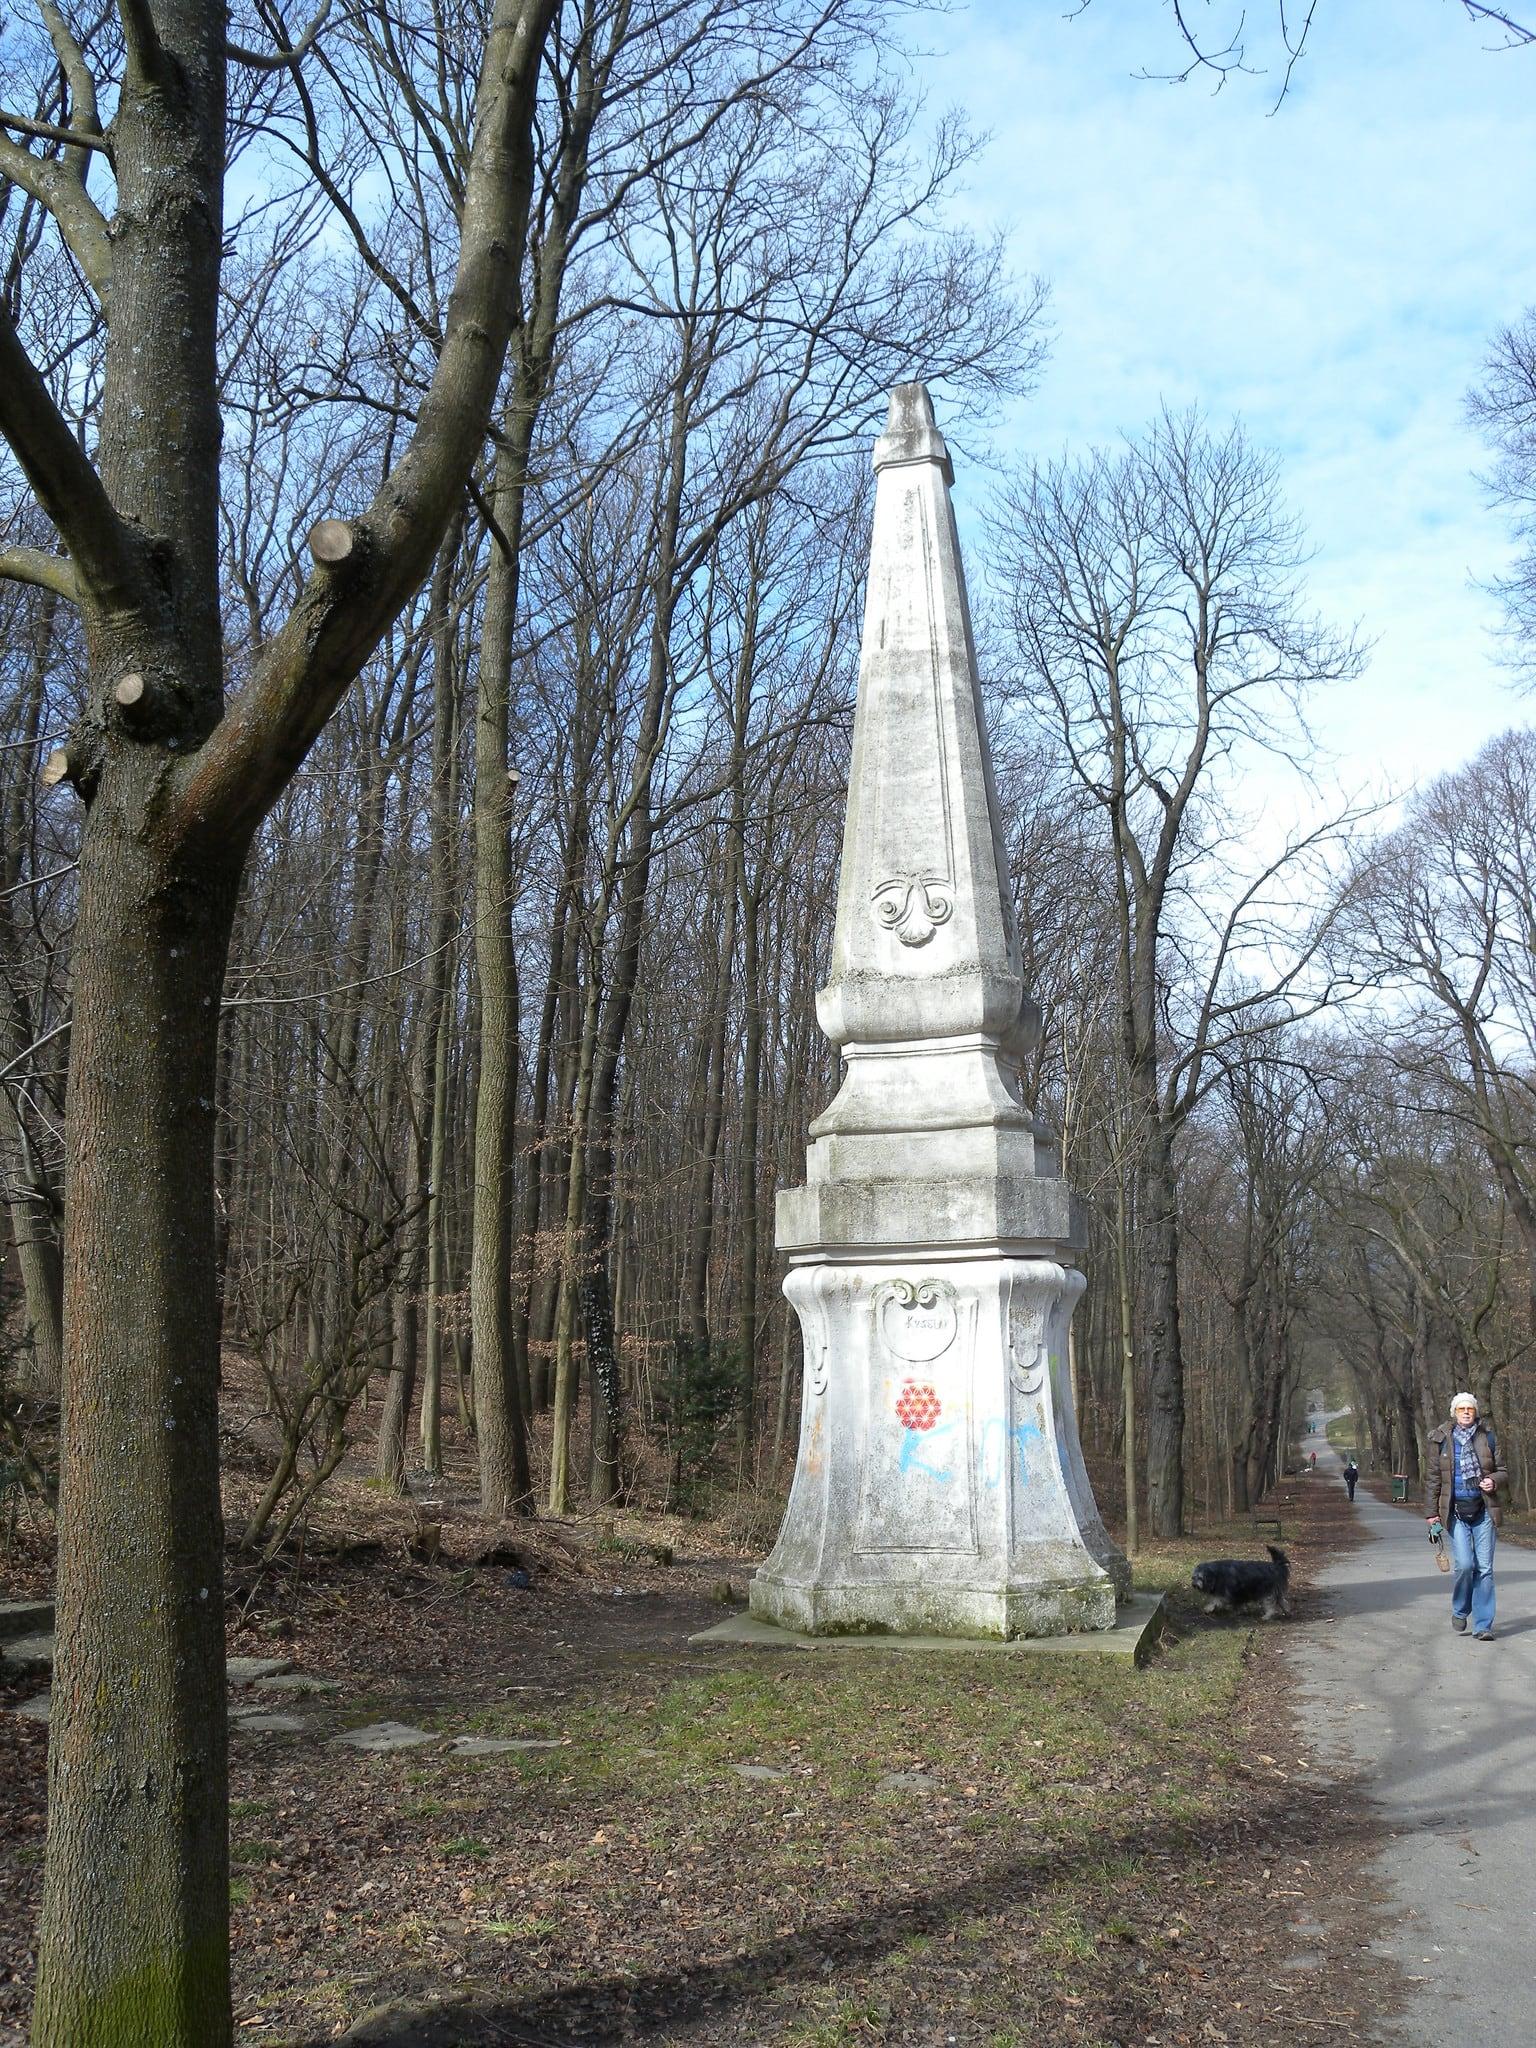 Theresien-Schaukel の画像. vienna wien obelisk wandern schwarzenbergpark rundumadum mariatheresienschaukel